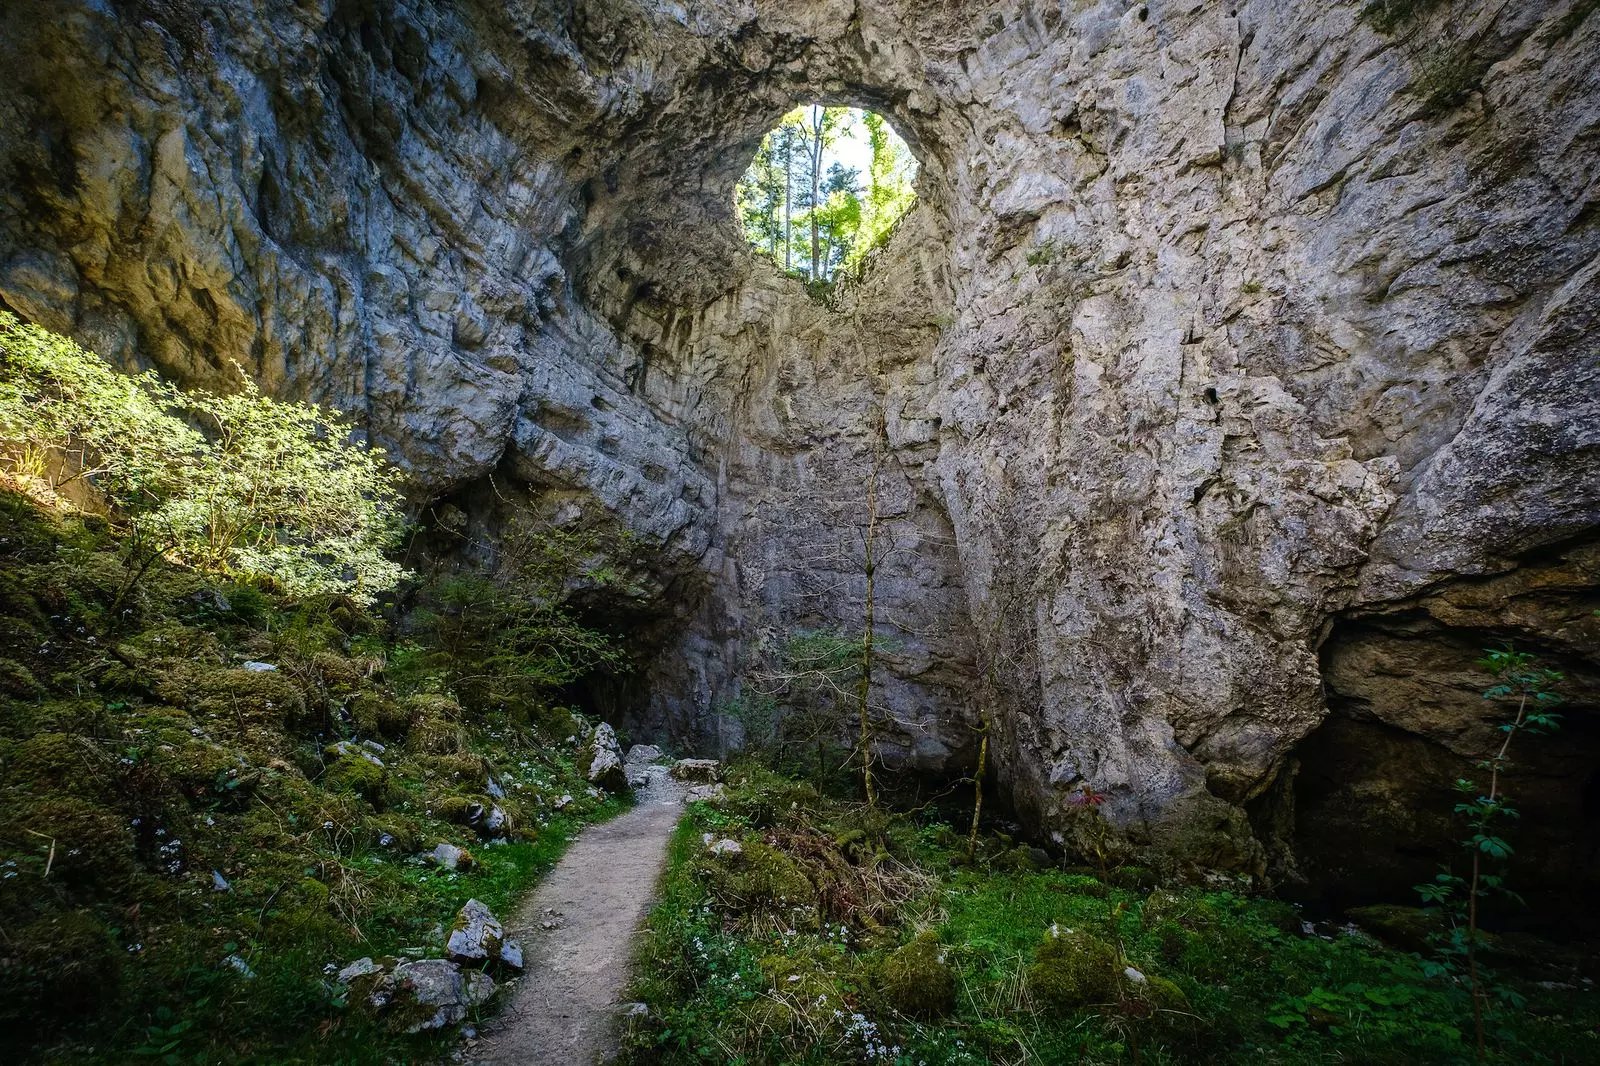 Rakov Skocjan Gorge, Slovenia - All you need to know